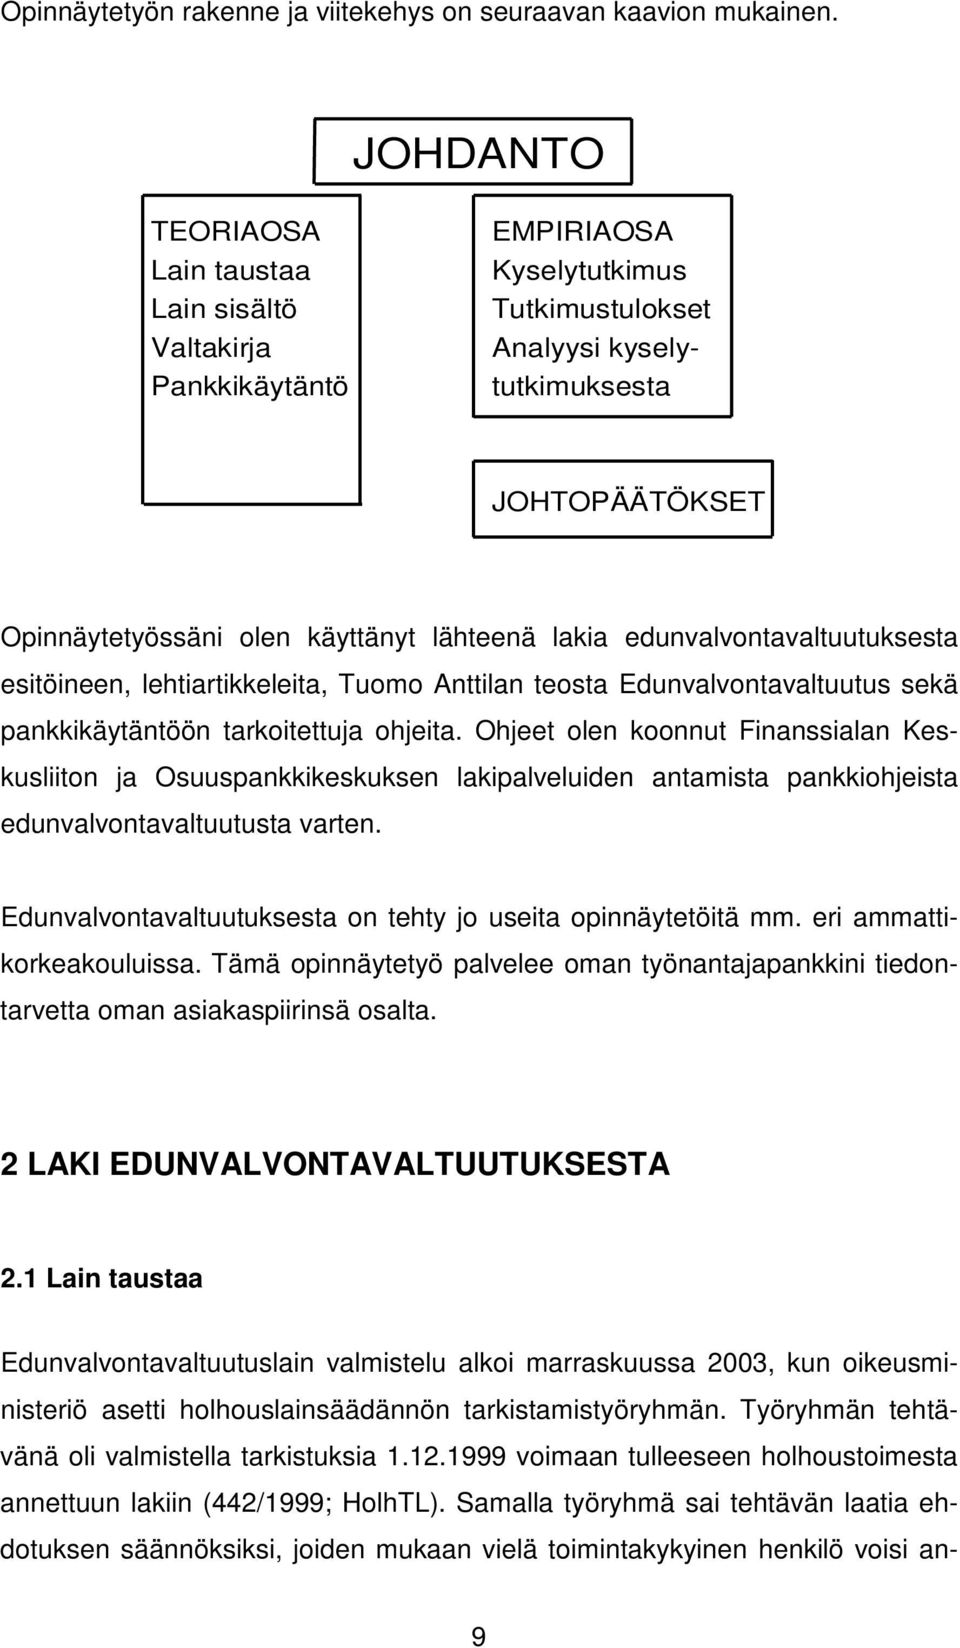 lakia edunvalvontavaltuutuksesta esitöineen, lehtiartikkeleita, Tuomo Anttilan teosta Edunvalvontavaltuutus sekä pankkikäytäntöön tarkoitettuja ohjeita.